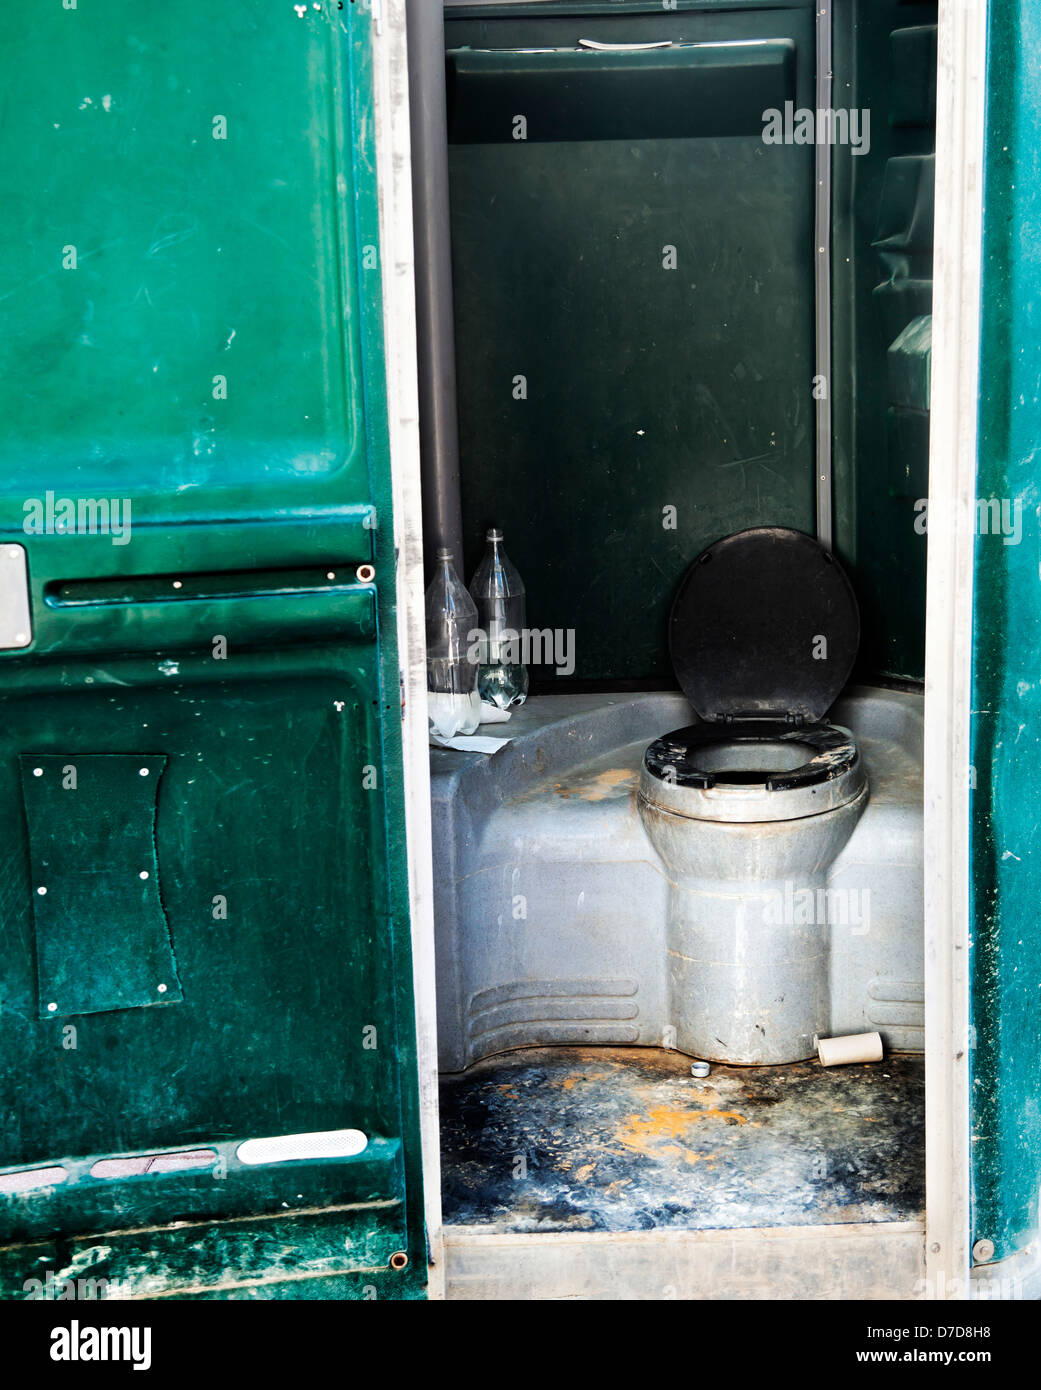 Toilette chimique Banque de photographies et d'images à haute résolution -  Alamy